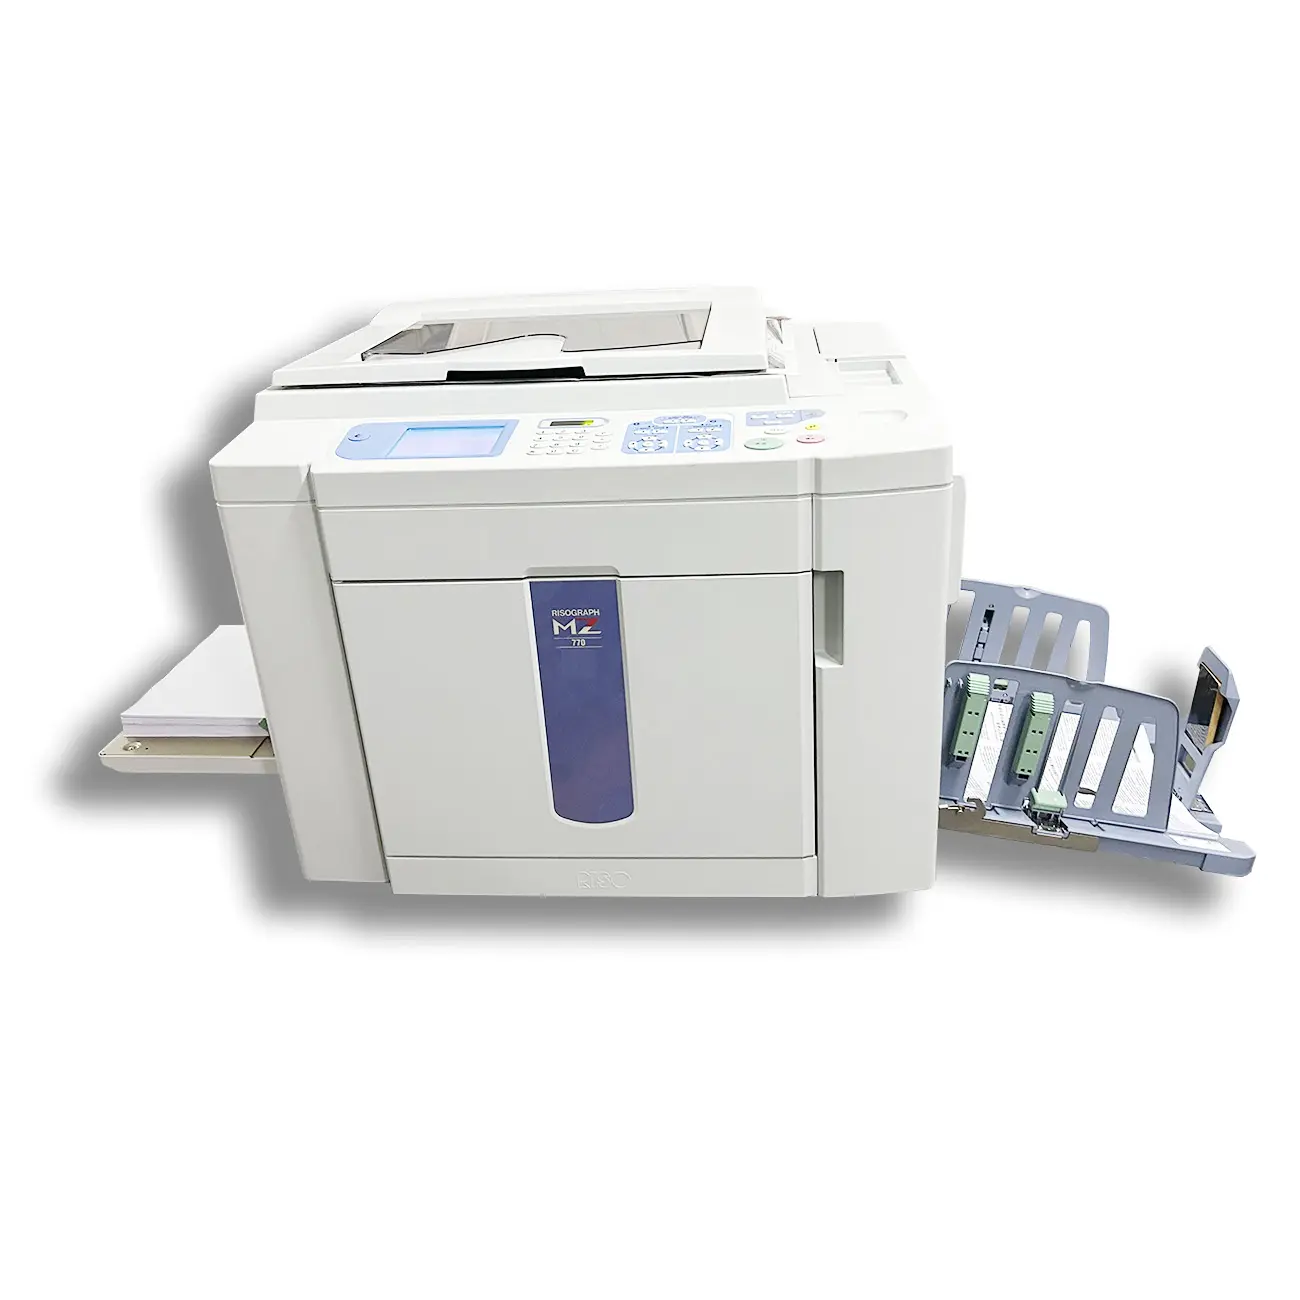 Fotocopiatrice ad alta velocità A3 150 ppm usata fotocopiatrice originale 2 colori rinnovata stampante Riso MZ770 970 per uso scolastico